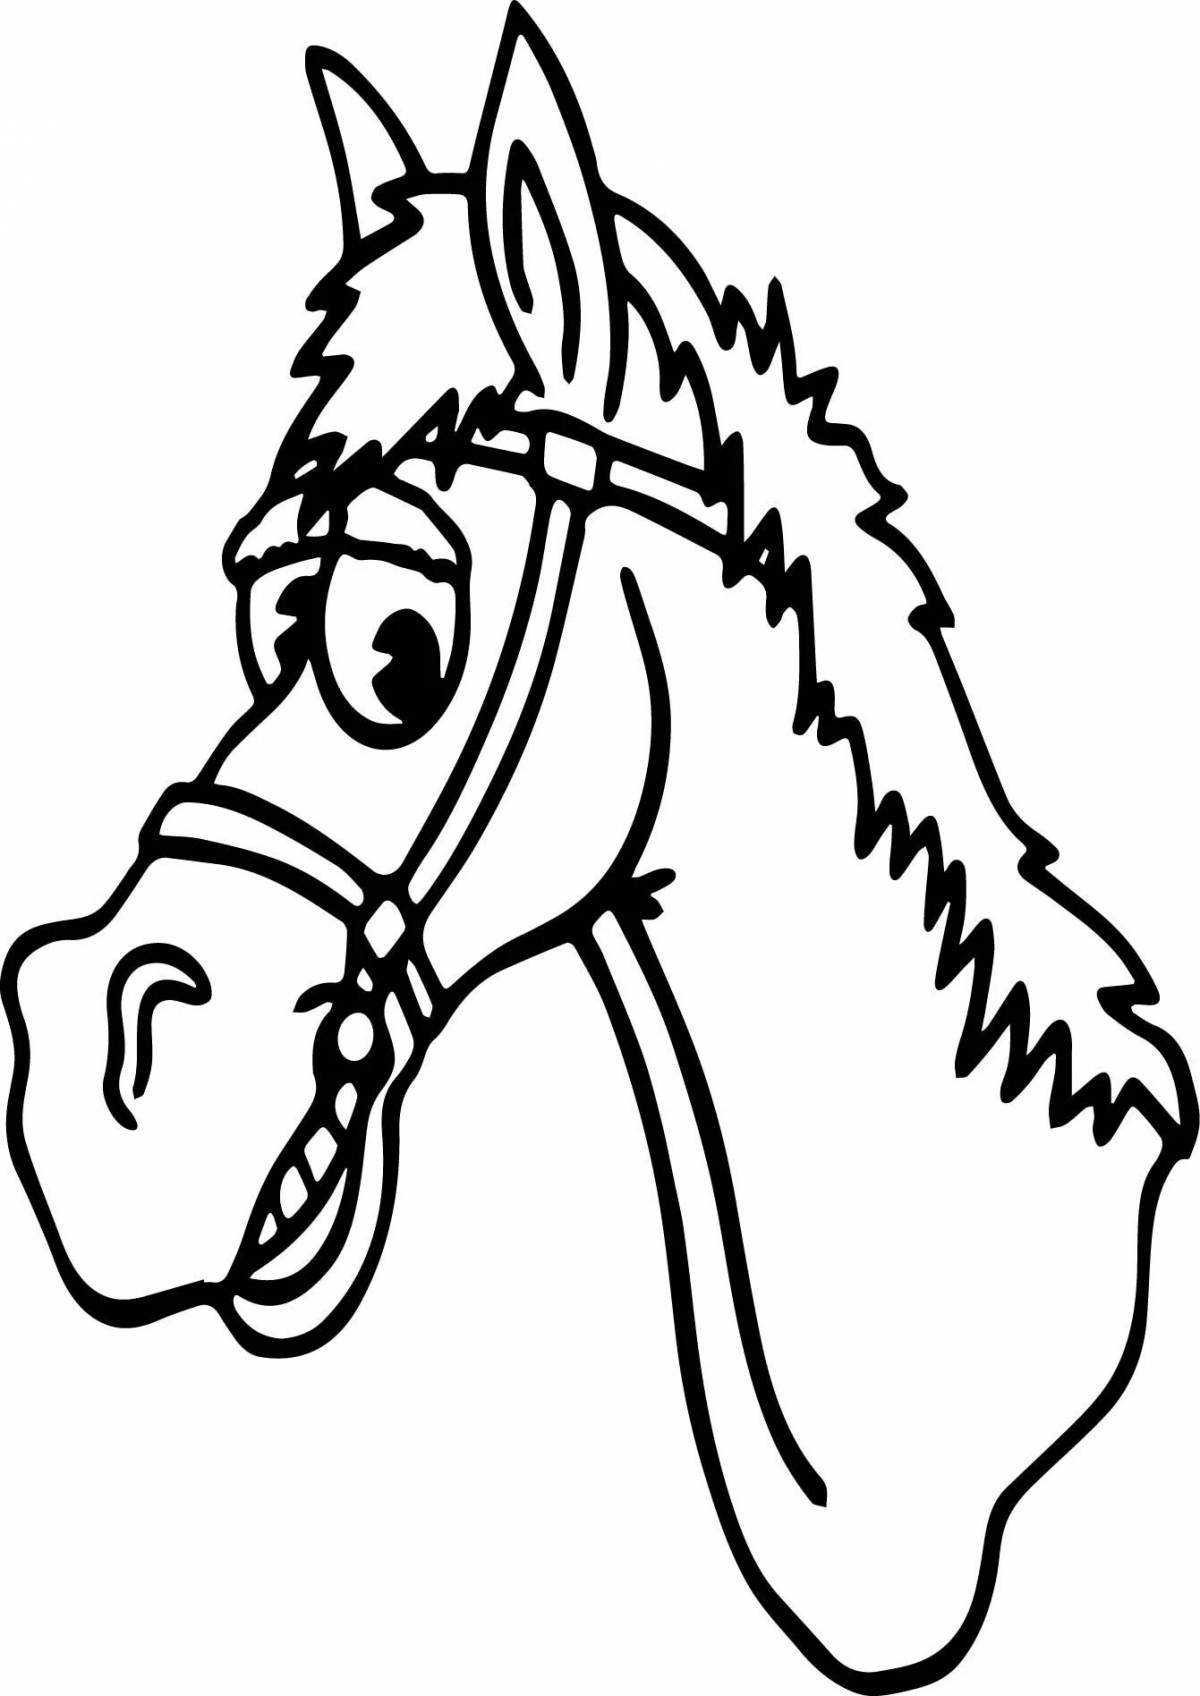 Иллюстрация Голова лошади. Медитативная раскраска, узоры. |